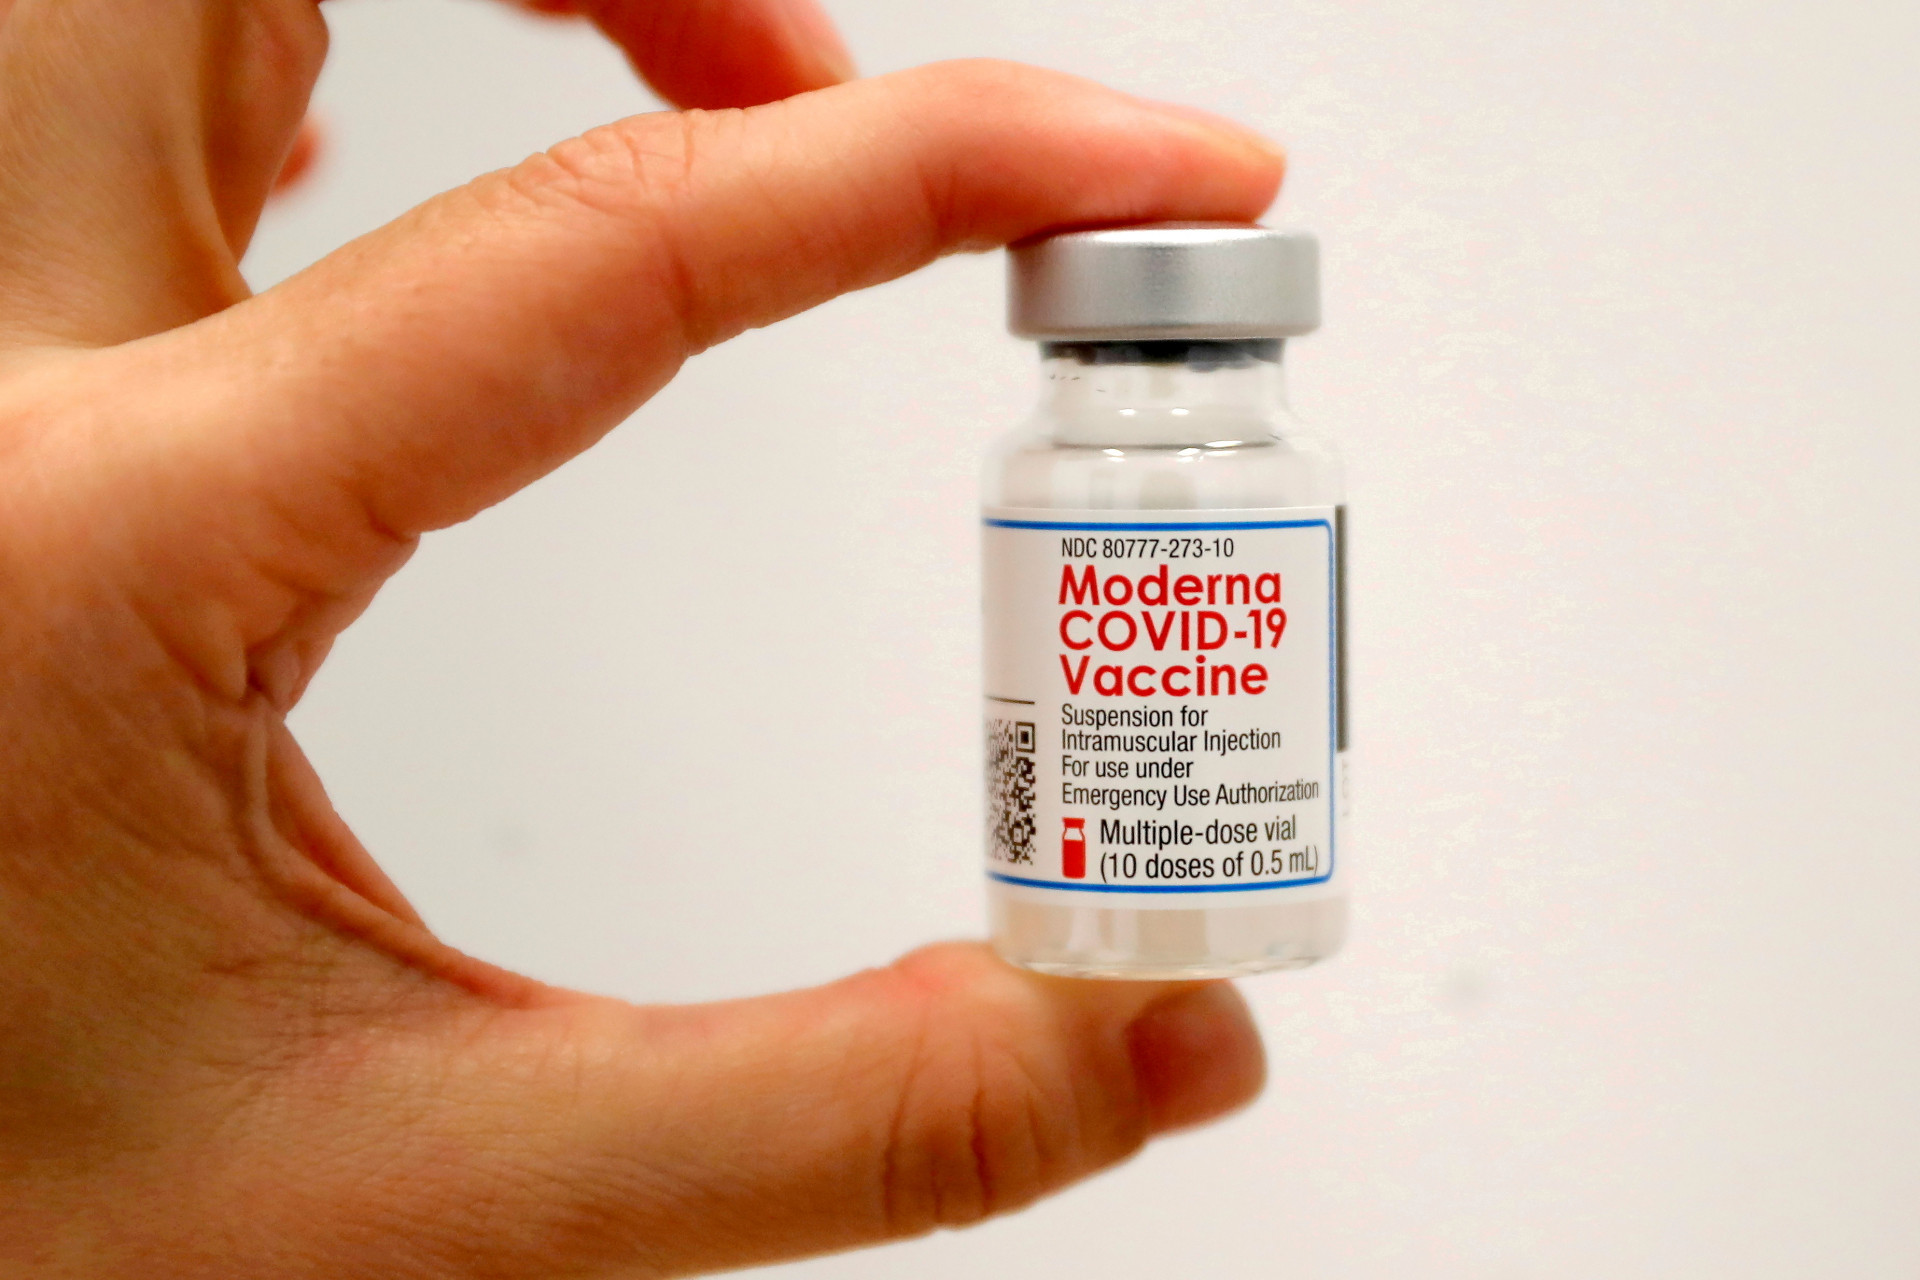 Moderna hiện tại là một trong những loại vắc xin Covid-19 được xem là hiệu quả nhất nhằm để ngăn chặn đại dịch và cũng là sản phẩm duy nhất của Moderna được bán ra thị trường.